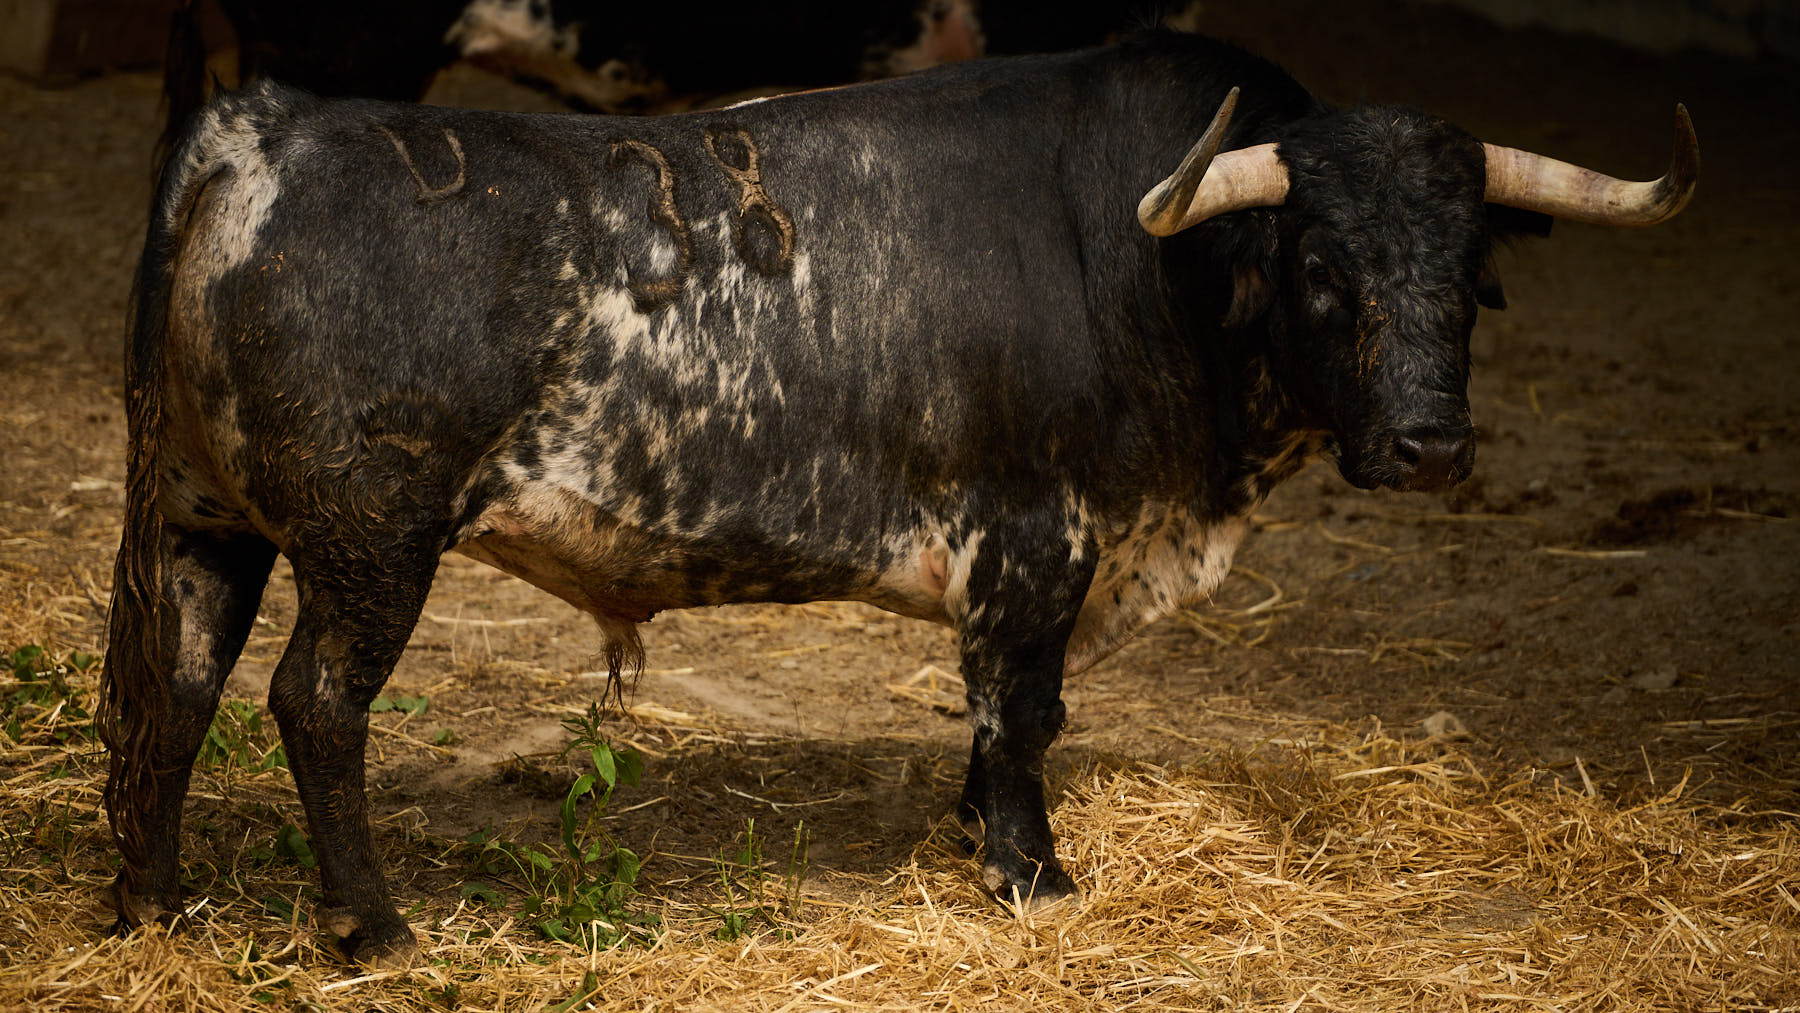 El toro 'Formalito' (nº38) de la ganadería de Cebada Gago (9 de julio) y de 550 kilos de peso en los corrales del Gas de Pamplona. PABLO LASAOSA